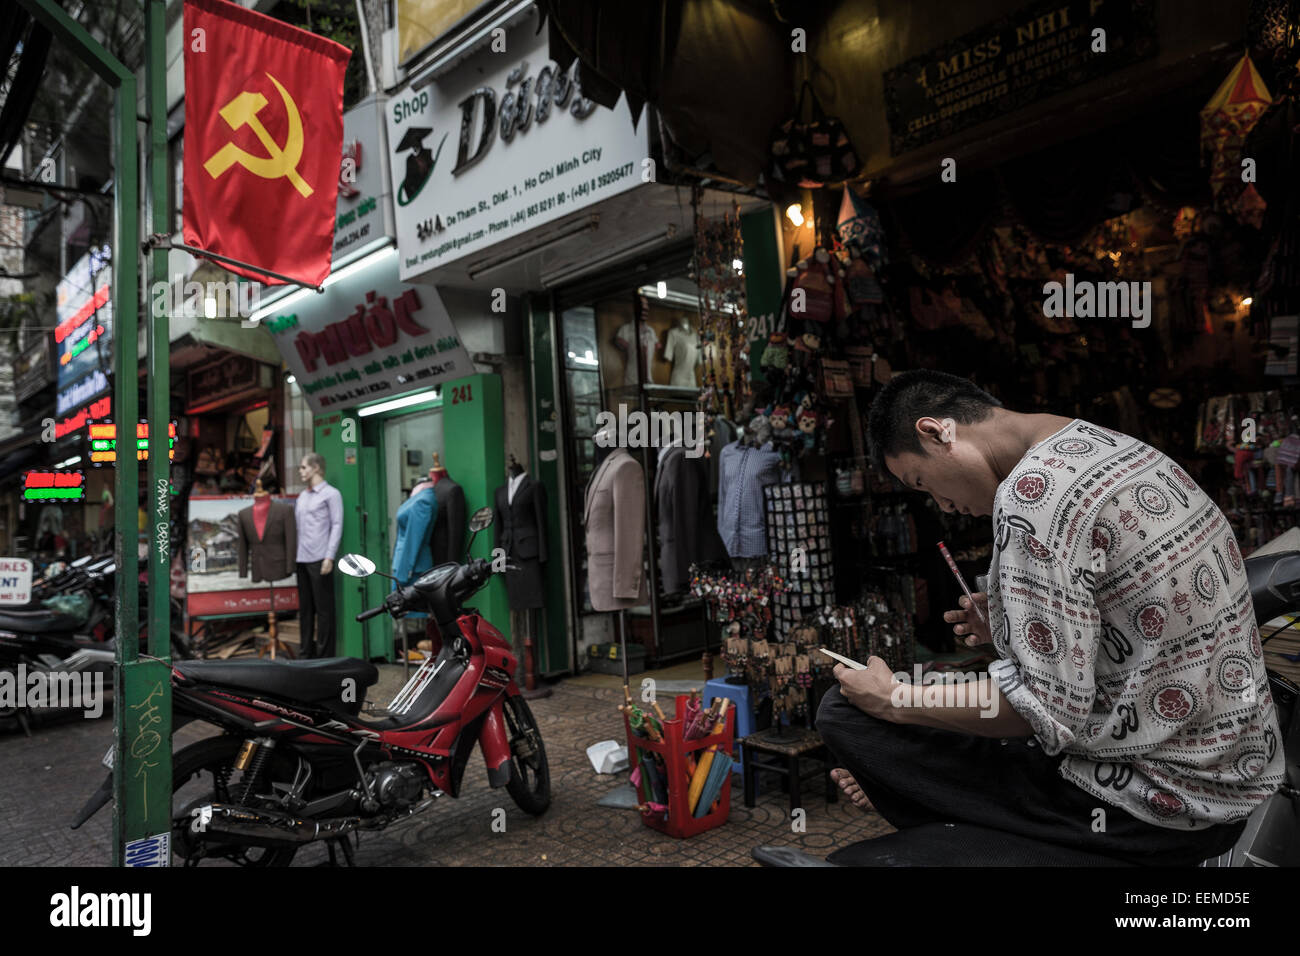 Un jeune homme est assis sur l'un des rues décorées de drapeaux avec le symbole communiste. Banque D'Images